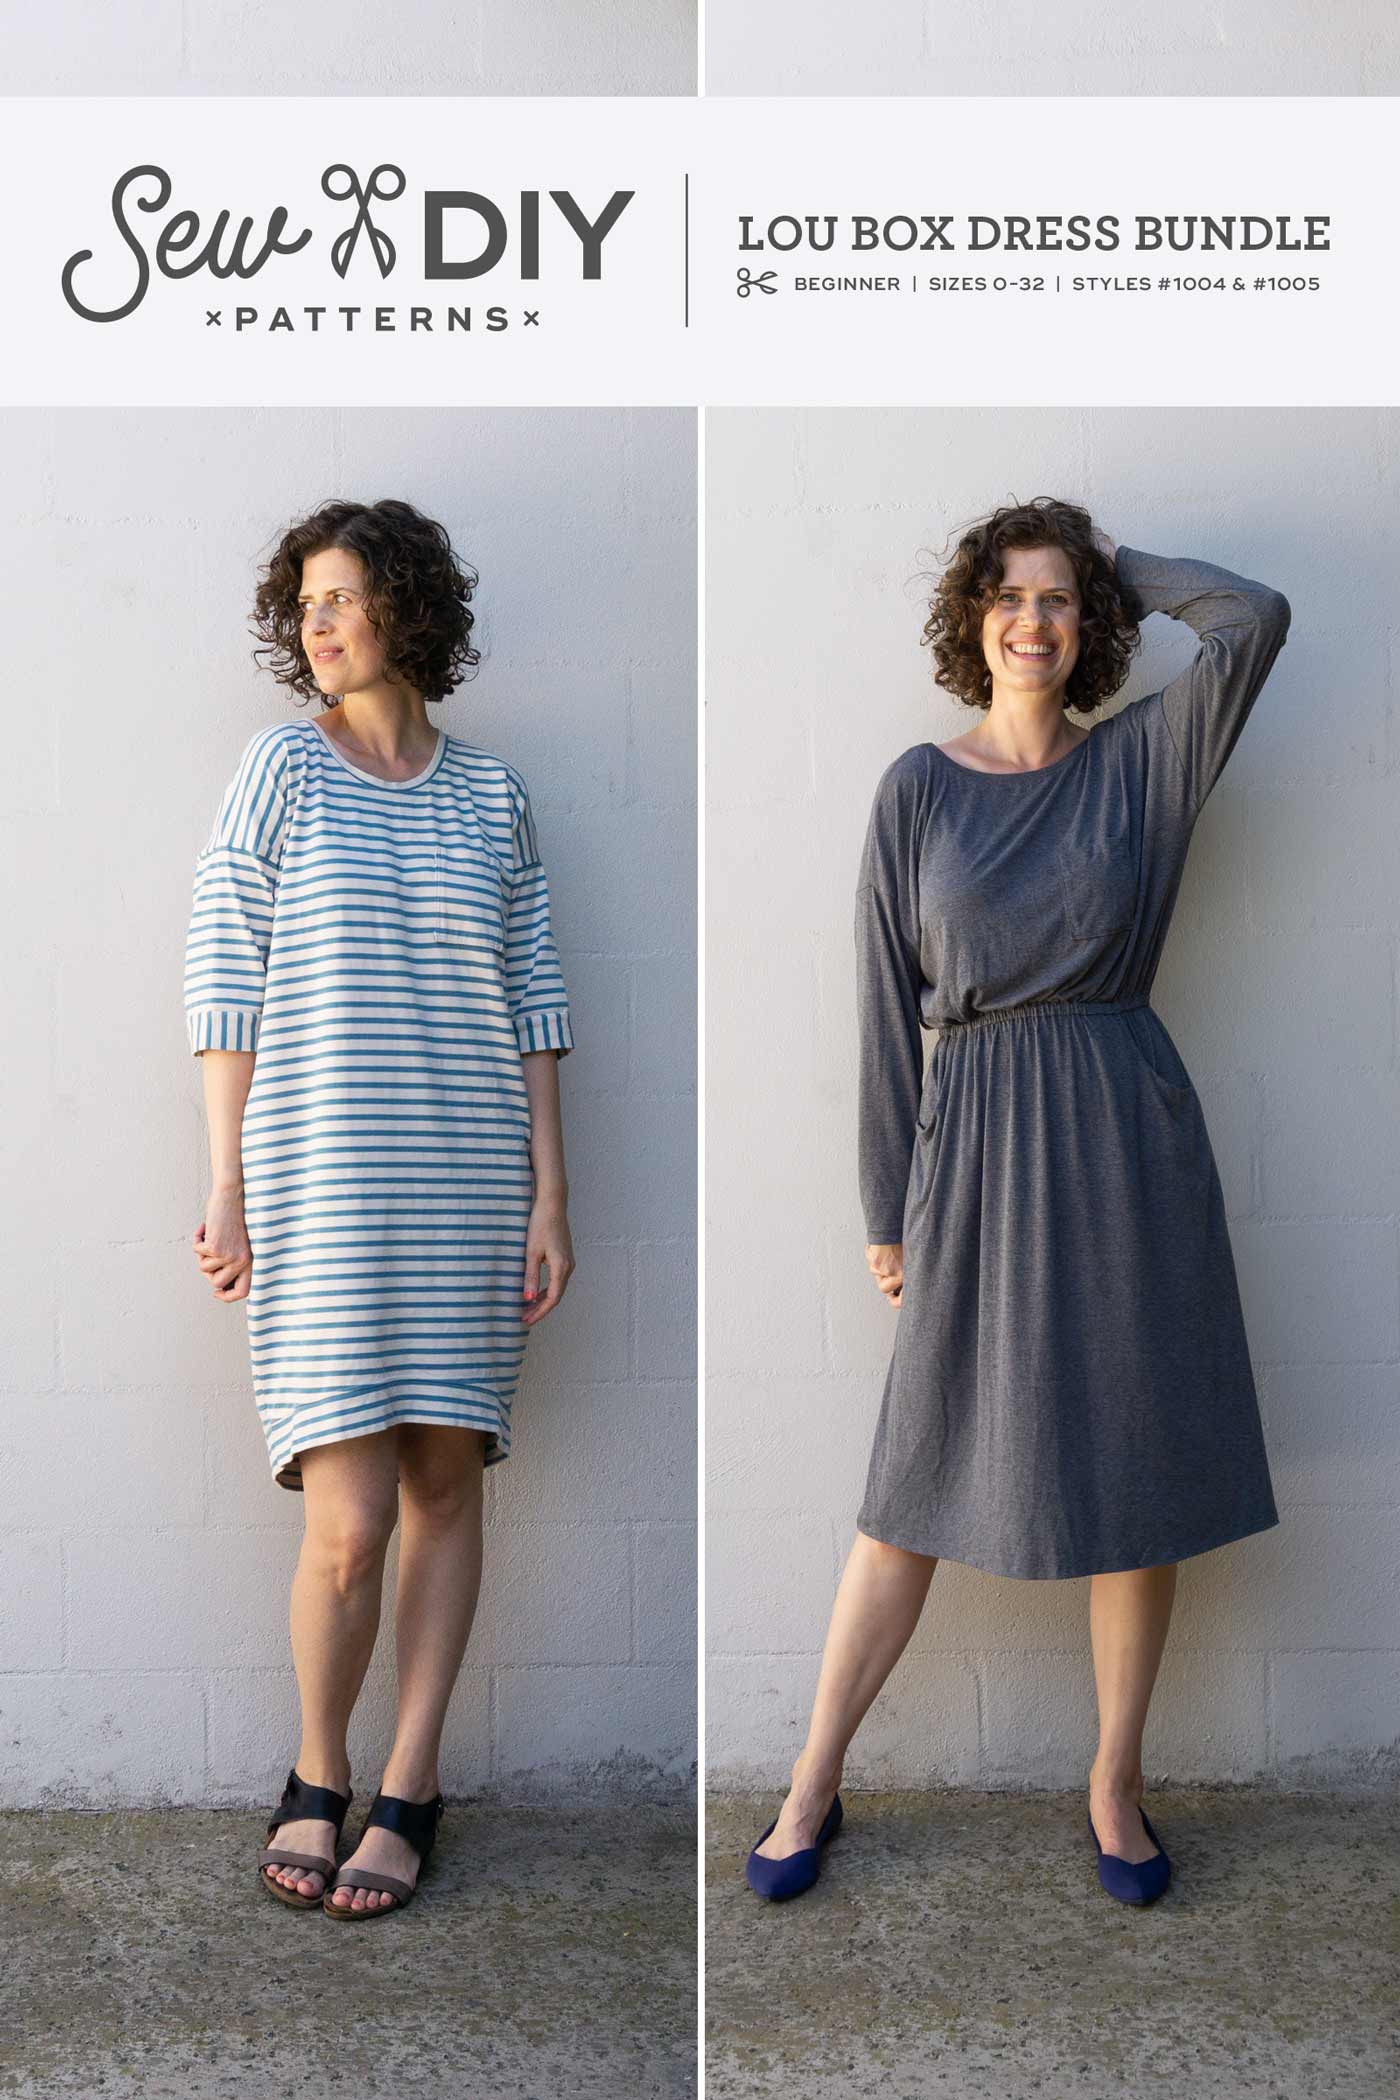 Lou Box Dress 1 & 2 Bundle PDF Patterns — Sew DIY